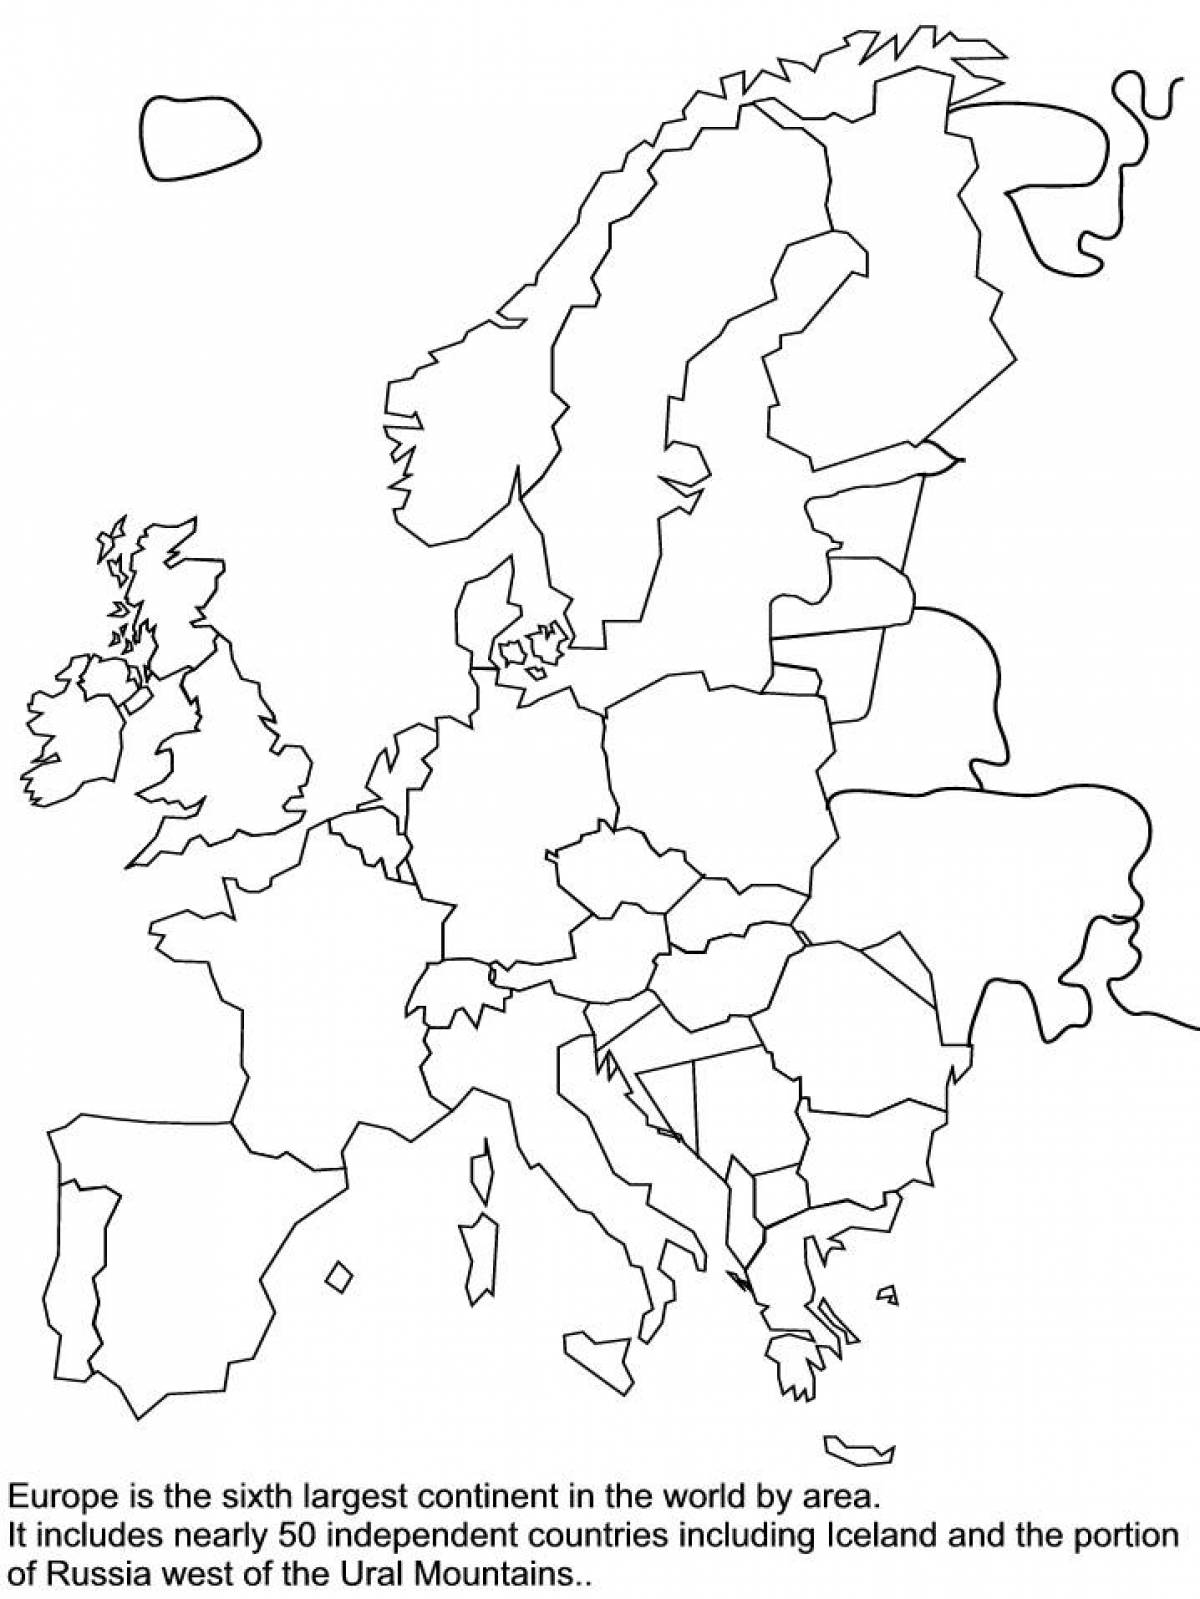 Поразительная карта европы